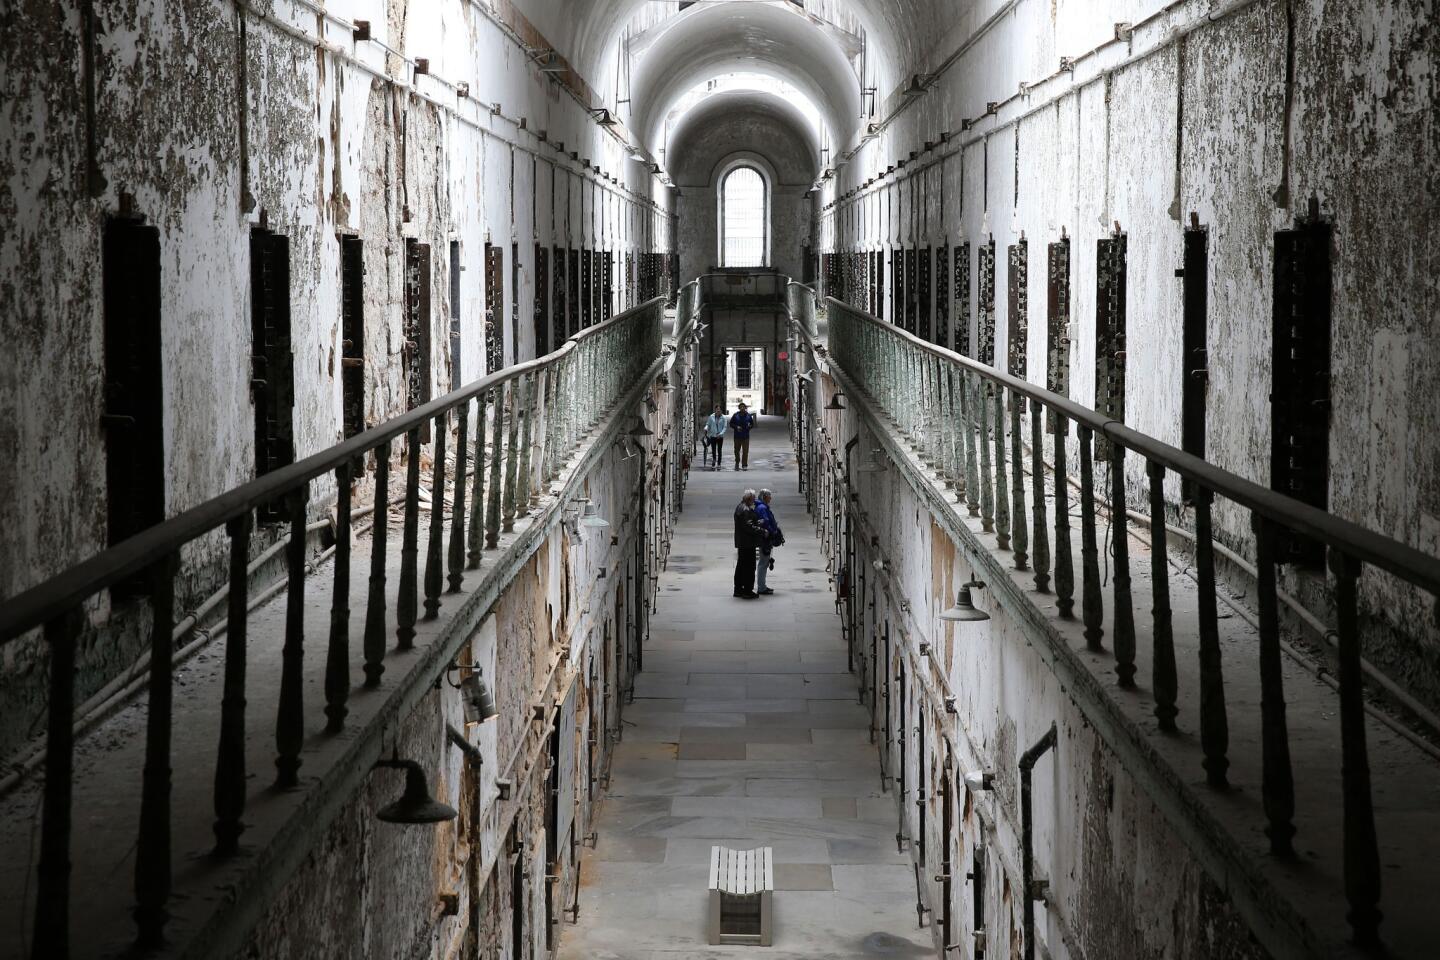 Prisoners living better than the president